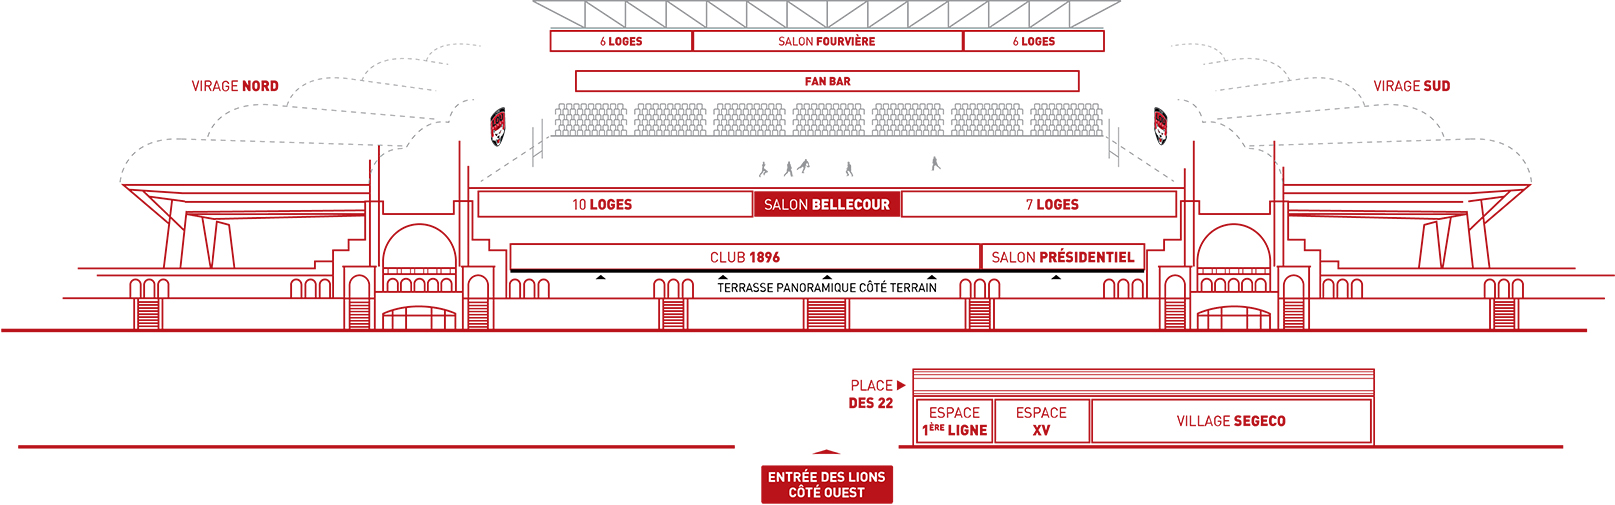 Espace salon Bellcour Matmut Stadium Lyon Gerland plan schématique 